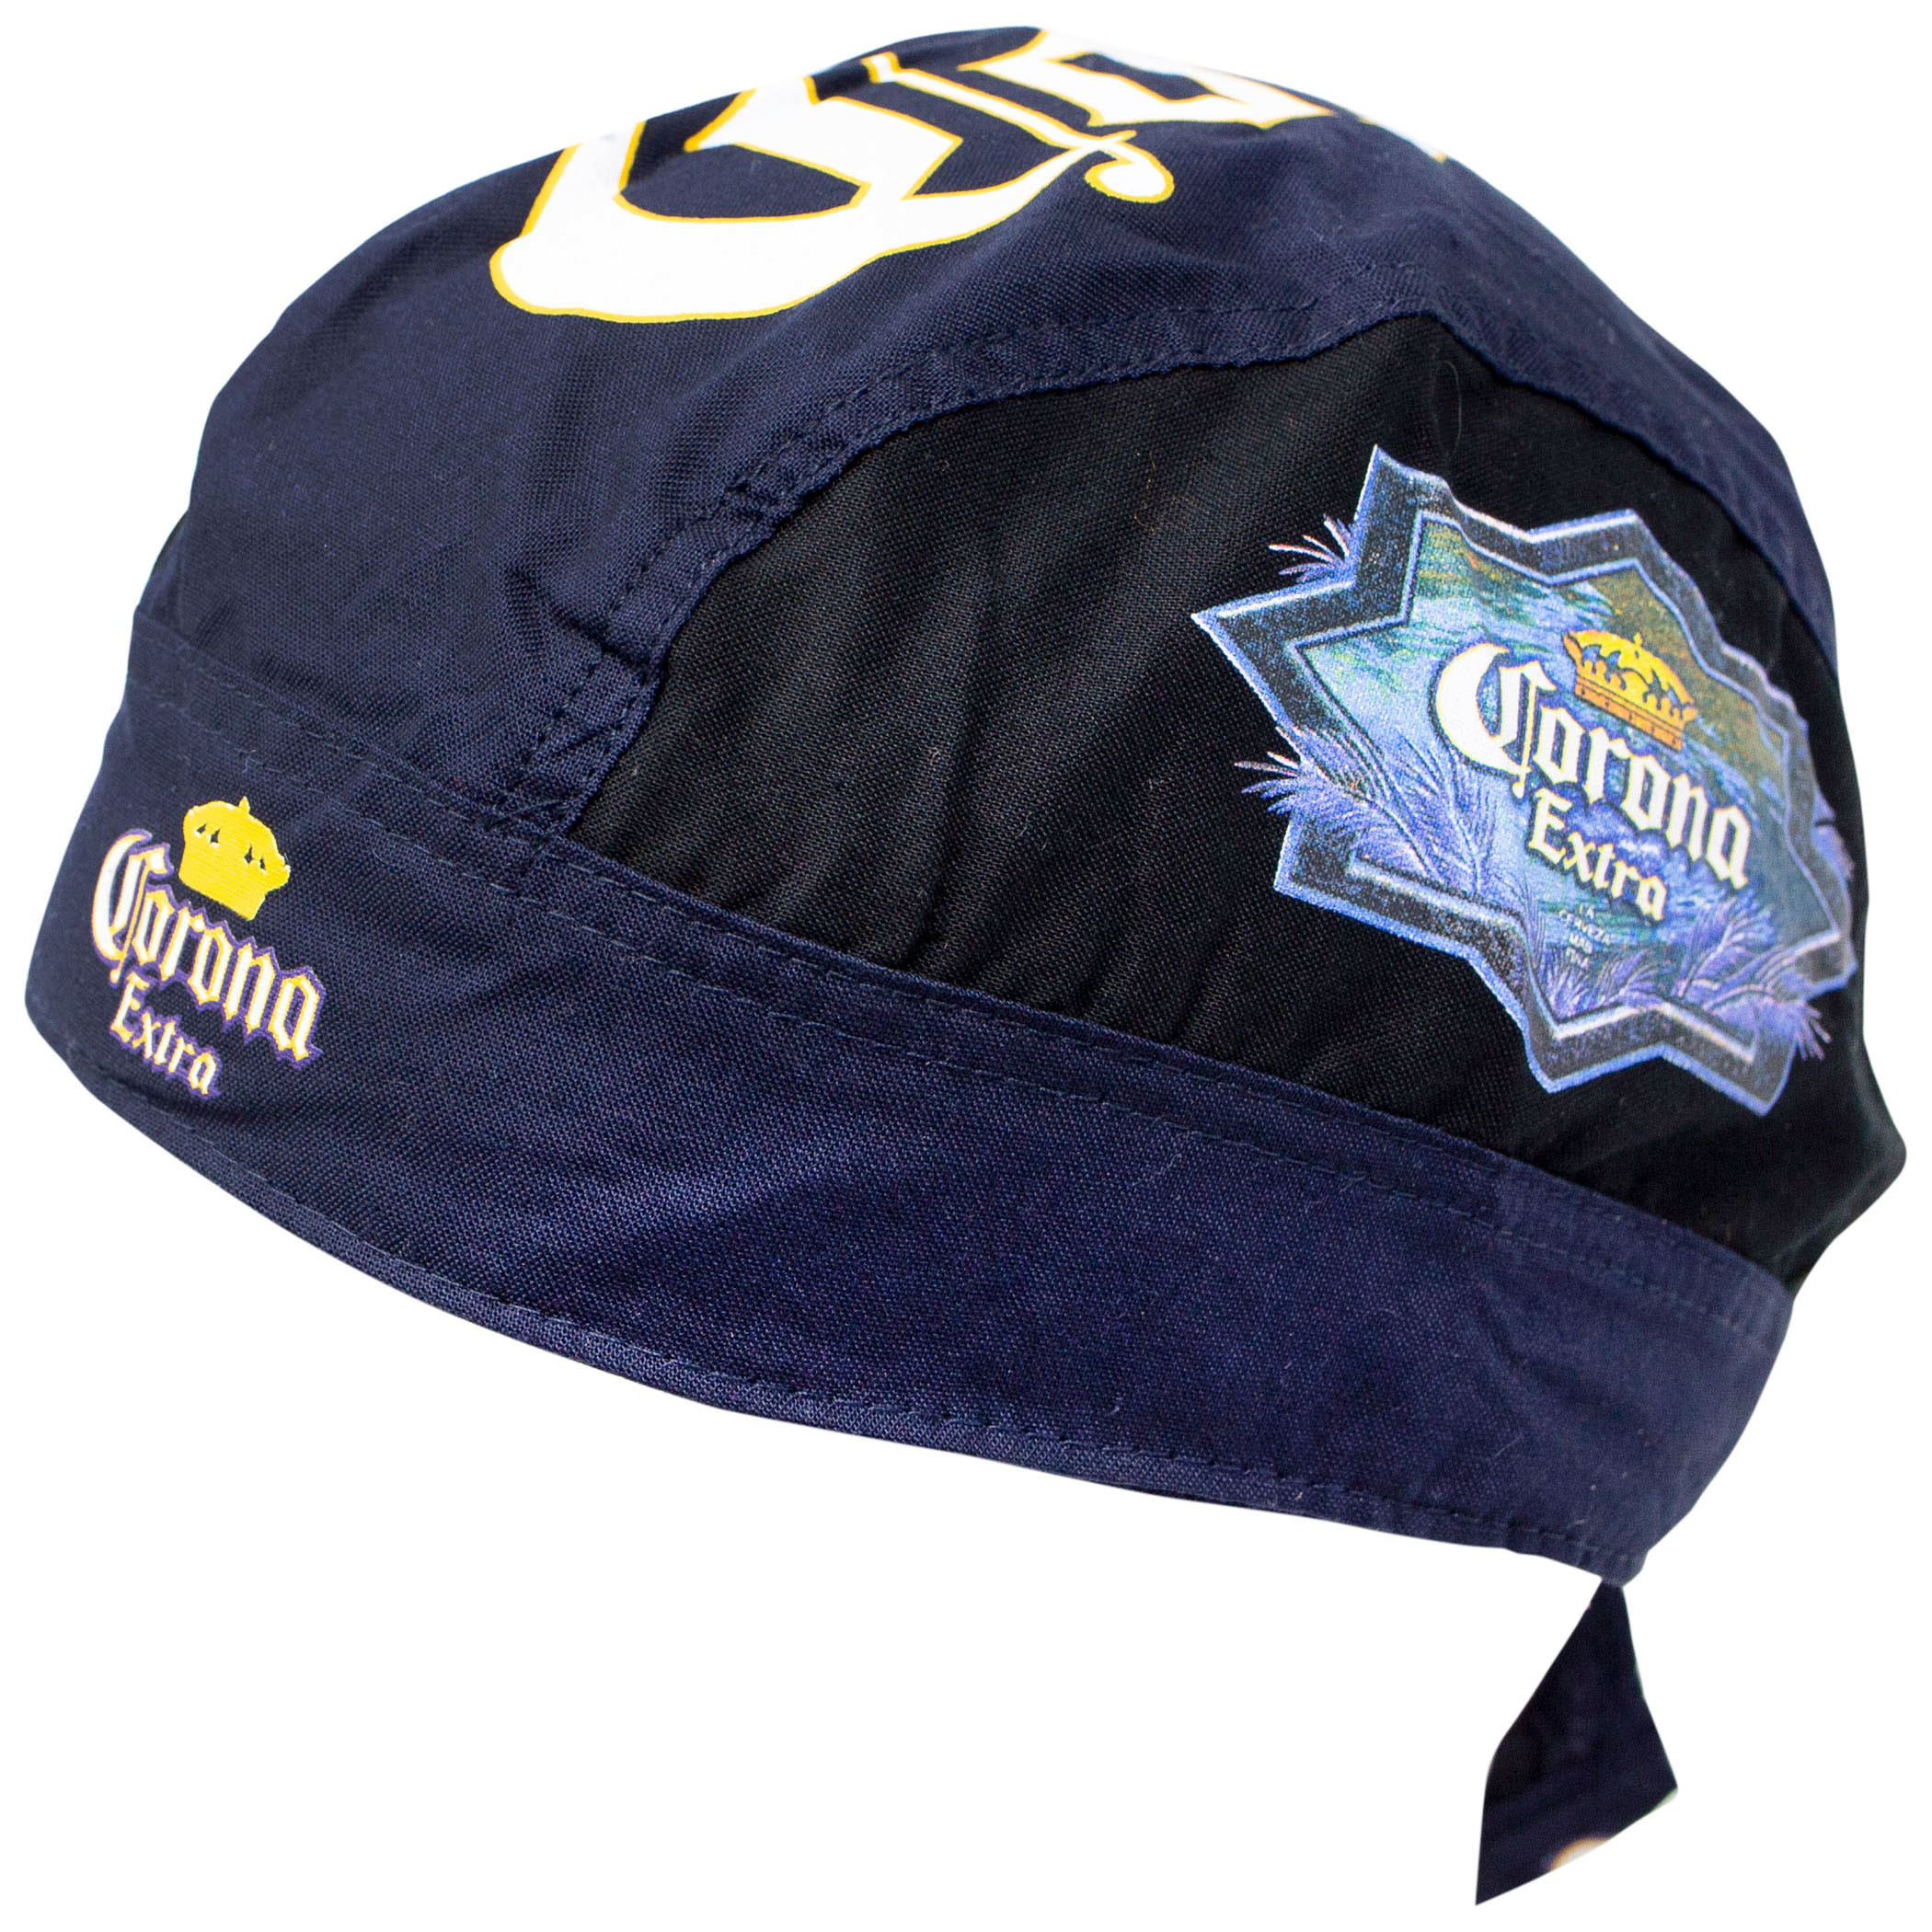 Corona Navy Blue Headwrap Bandana